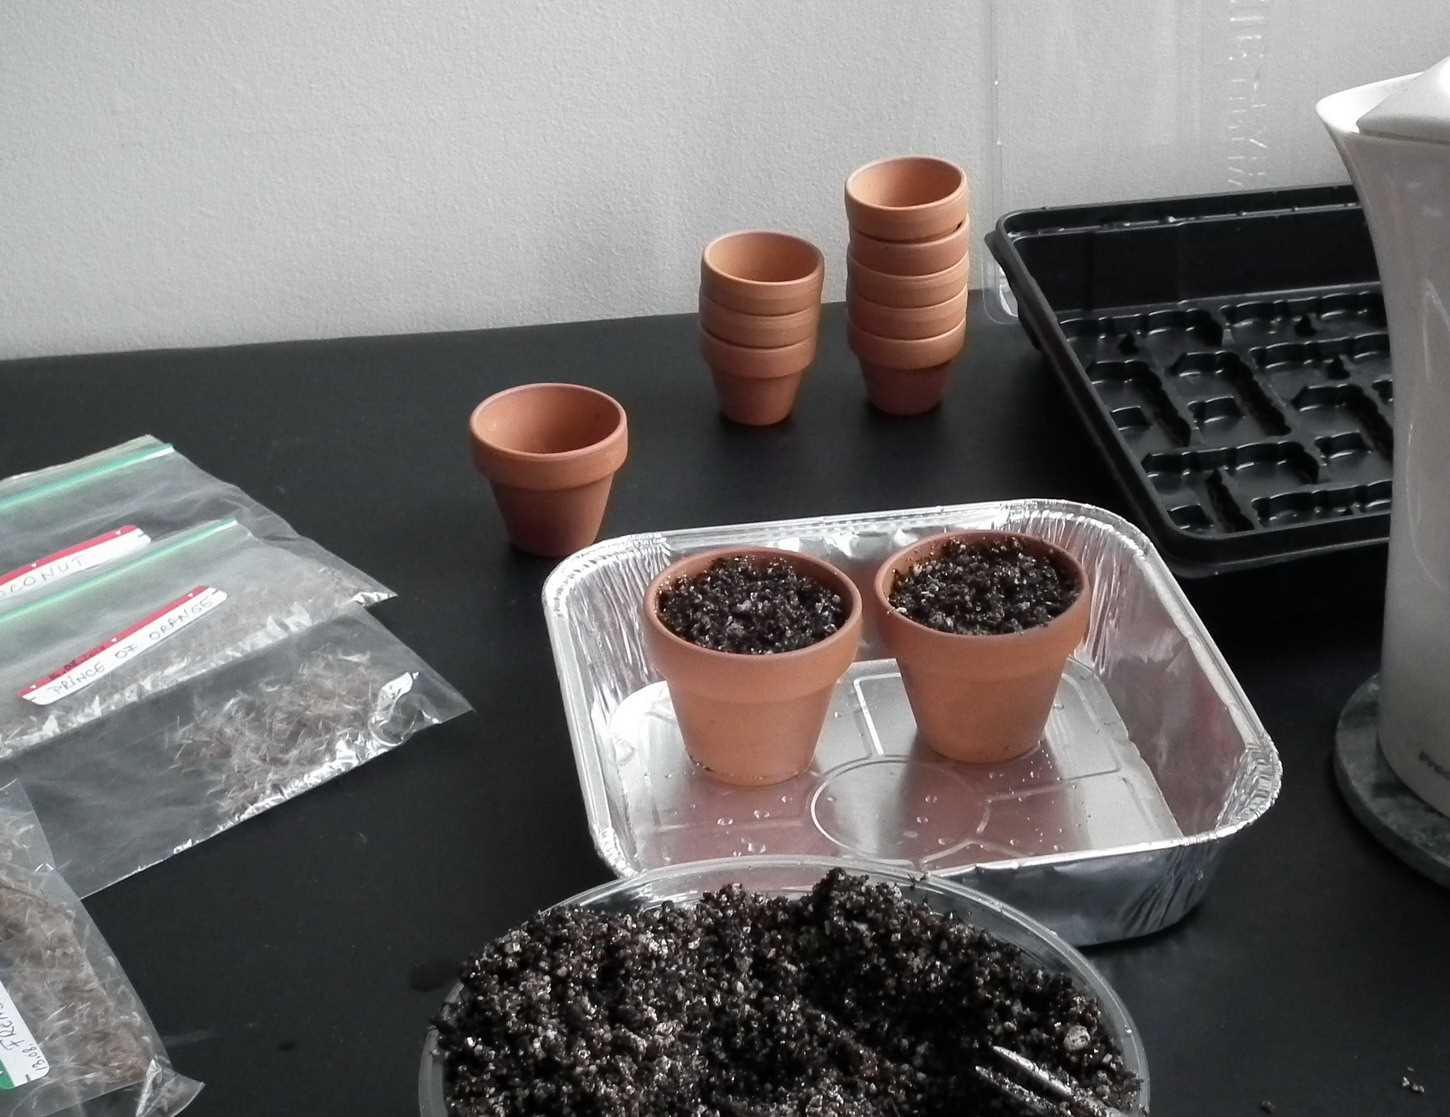 Как посадить герань семенами